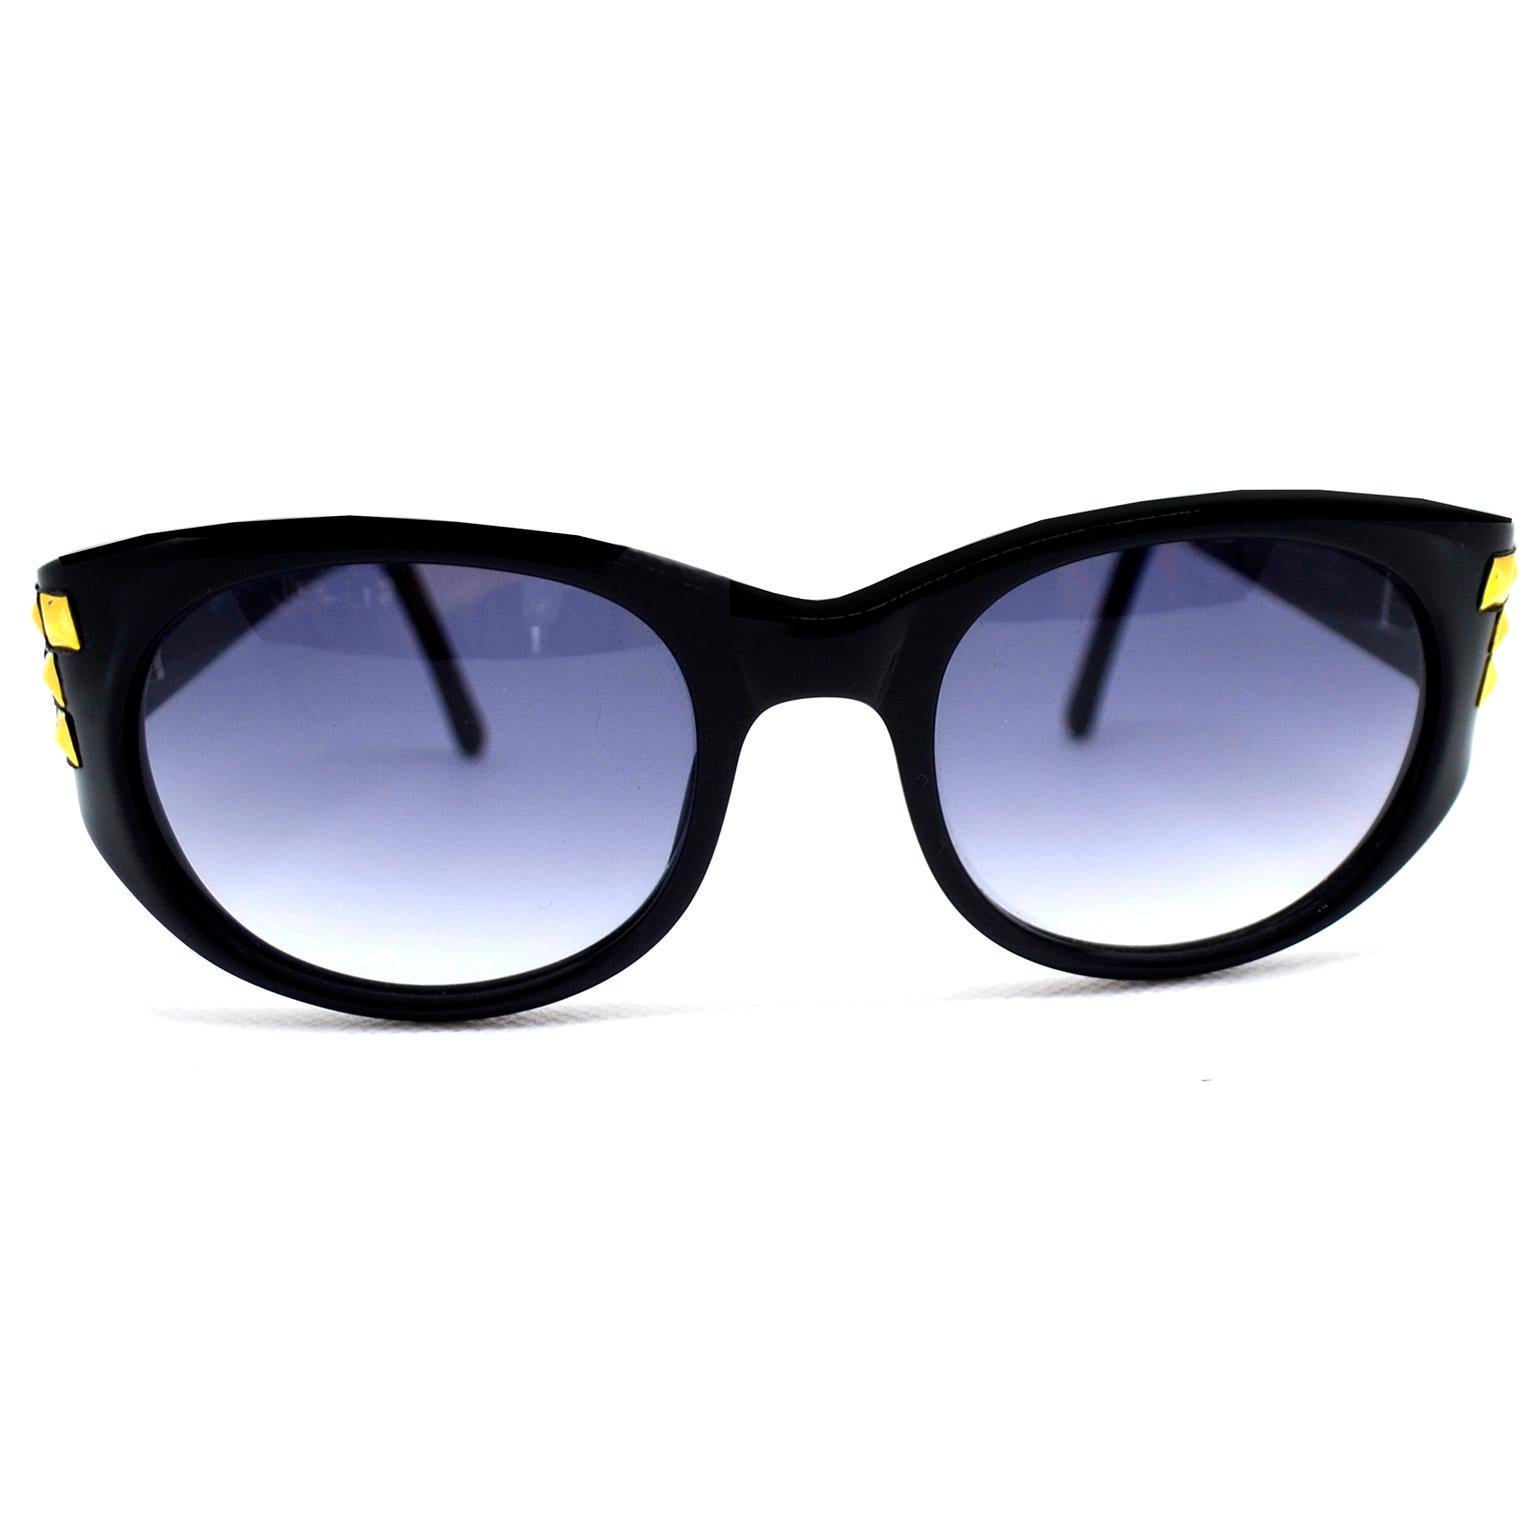 Il s'agit de superbes lunettes de soleil vintage d'Emmanuelle Khanh en noir avec des embellissements de clous dorés 3d.  Ces lunettes des années 1980 ont été fabriquées en France et portent le numéro de série EK-112-PY-16.  Des lunettes rocker chic